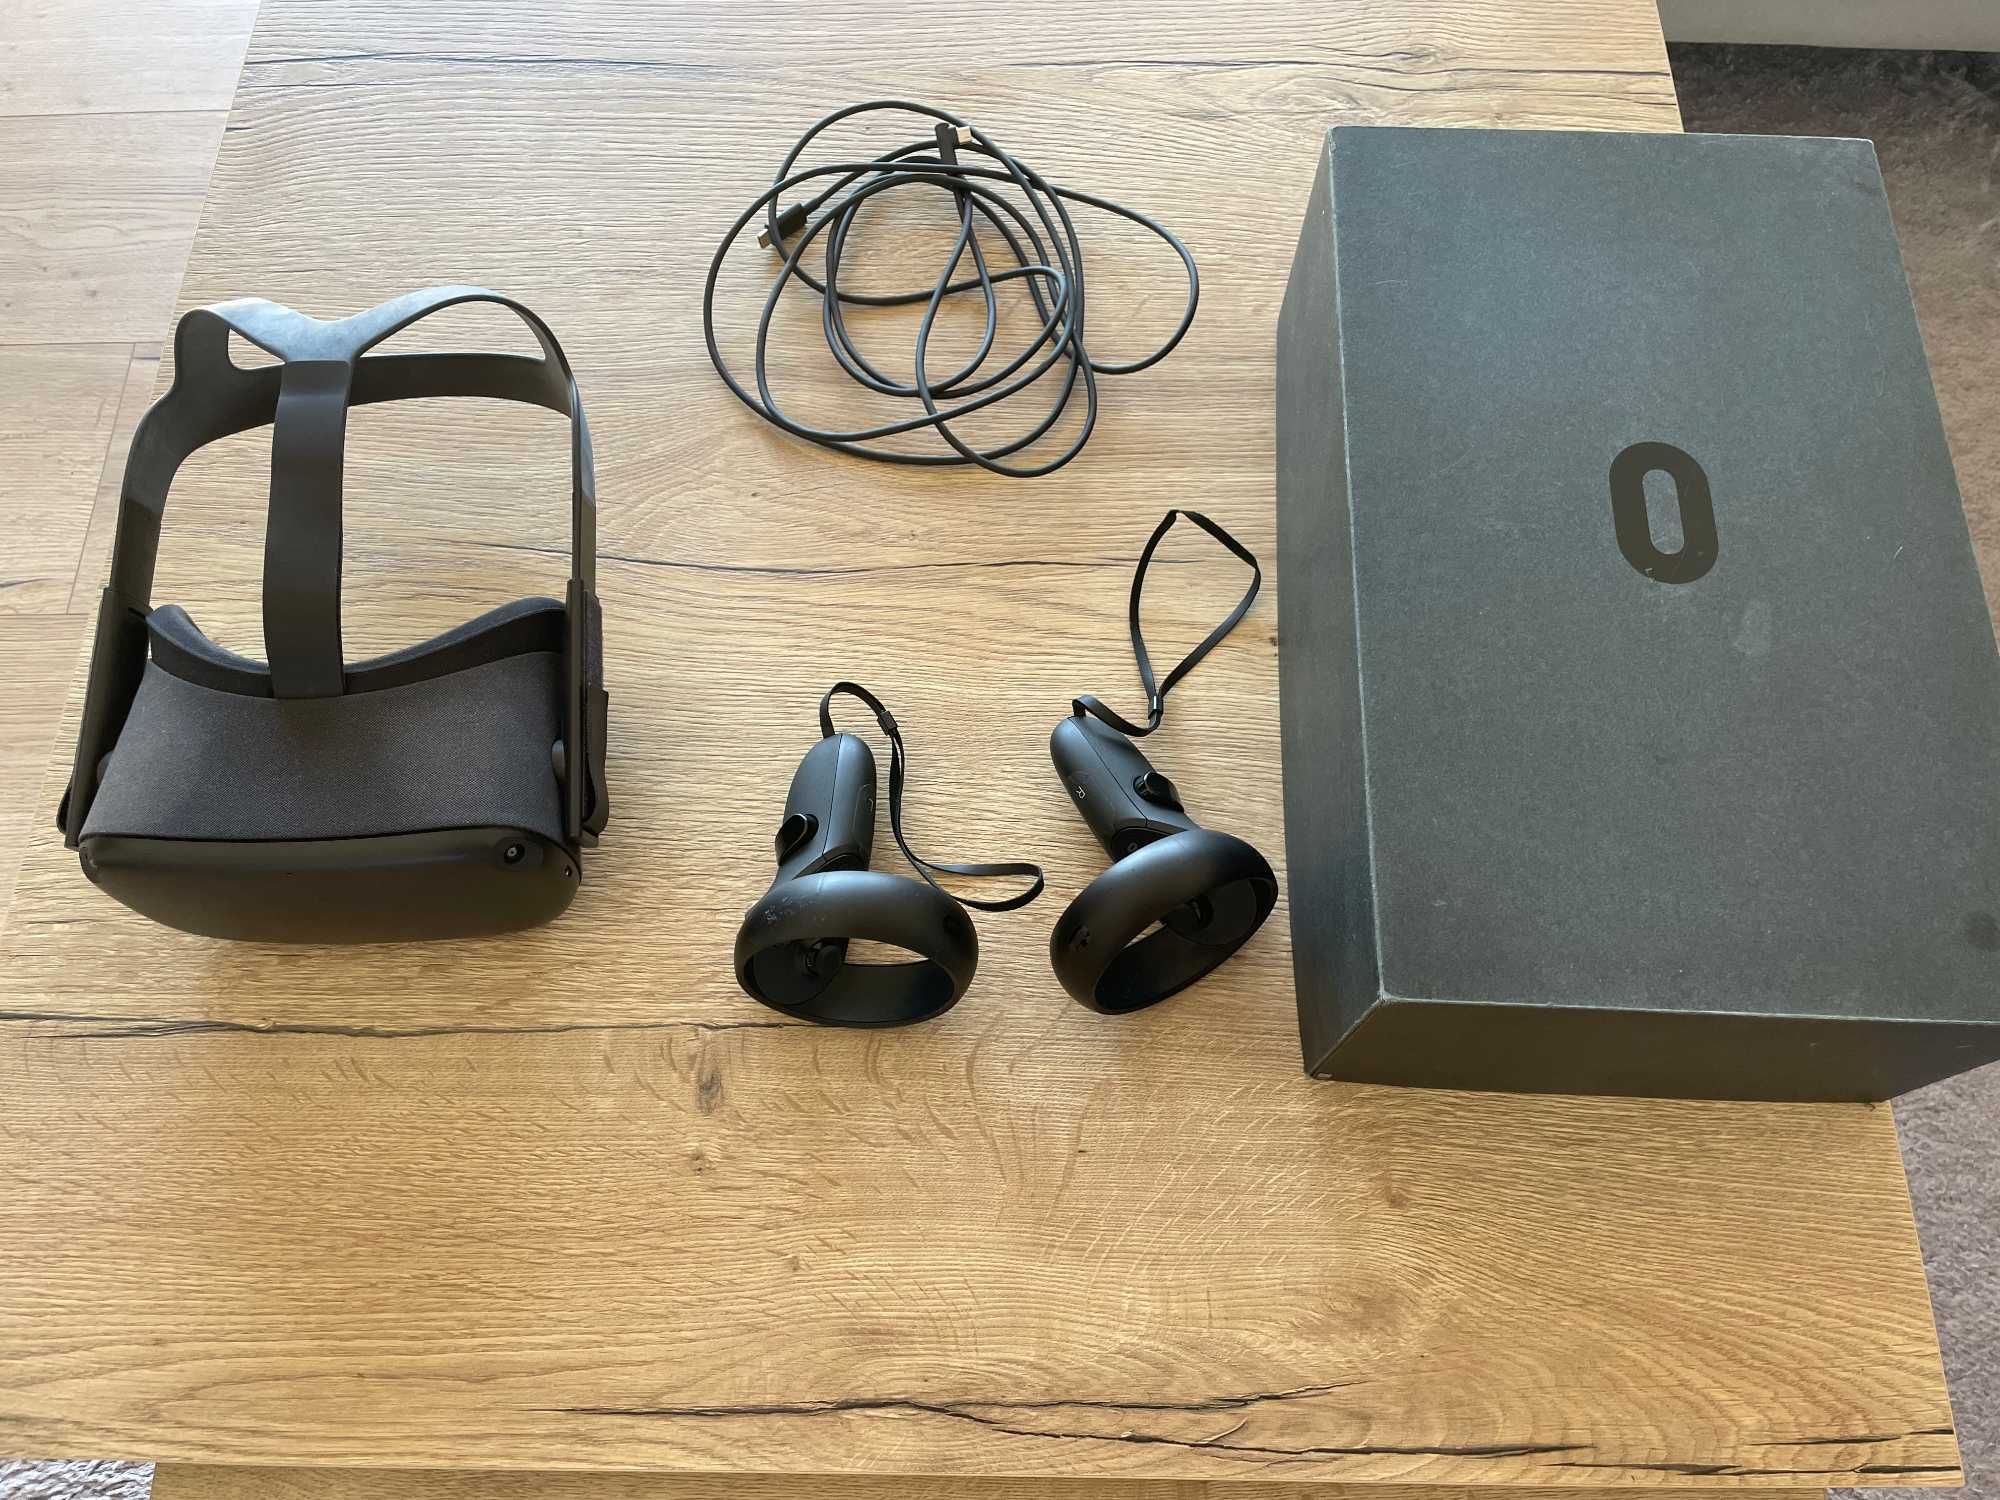 Oculus Quest VR 128GB